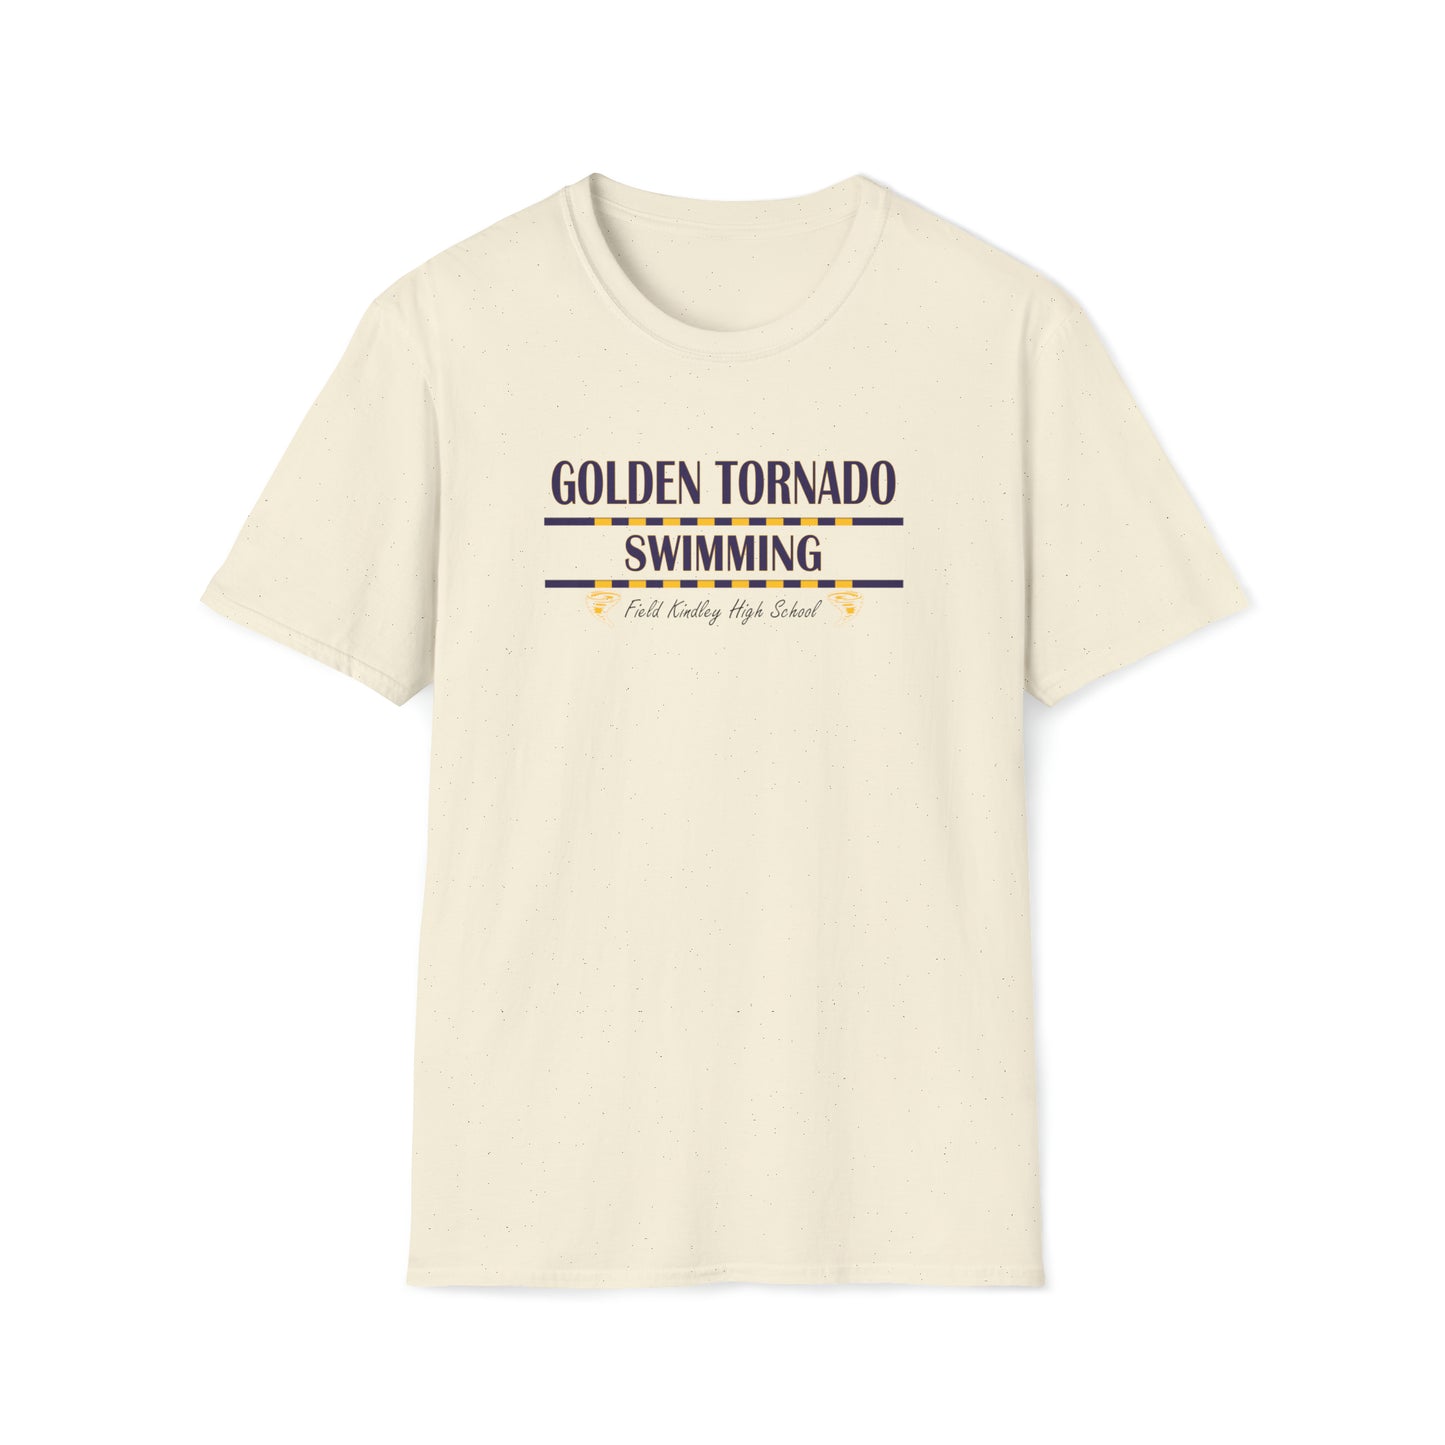 Golden Tornado Swim - Gildan Unisex Softstyle T-Shirt